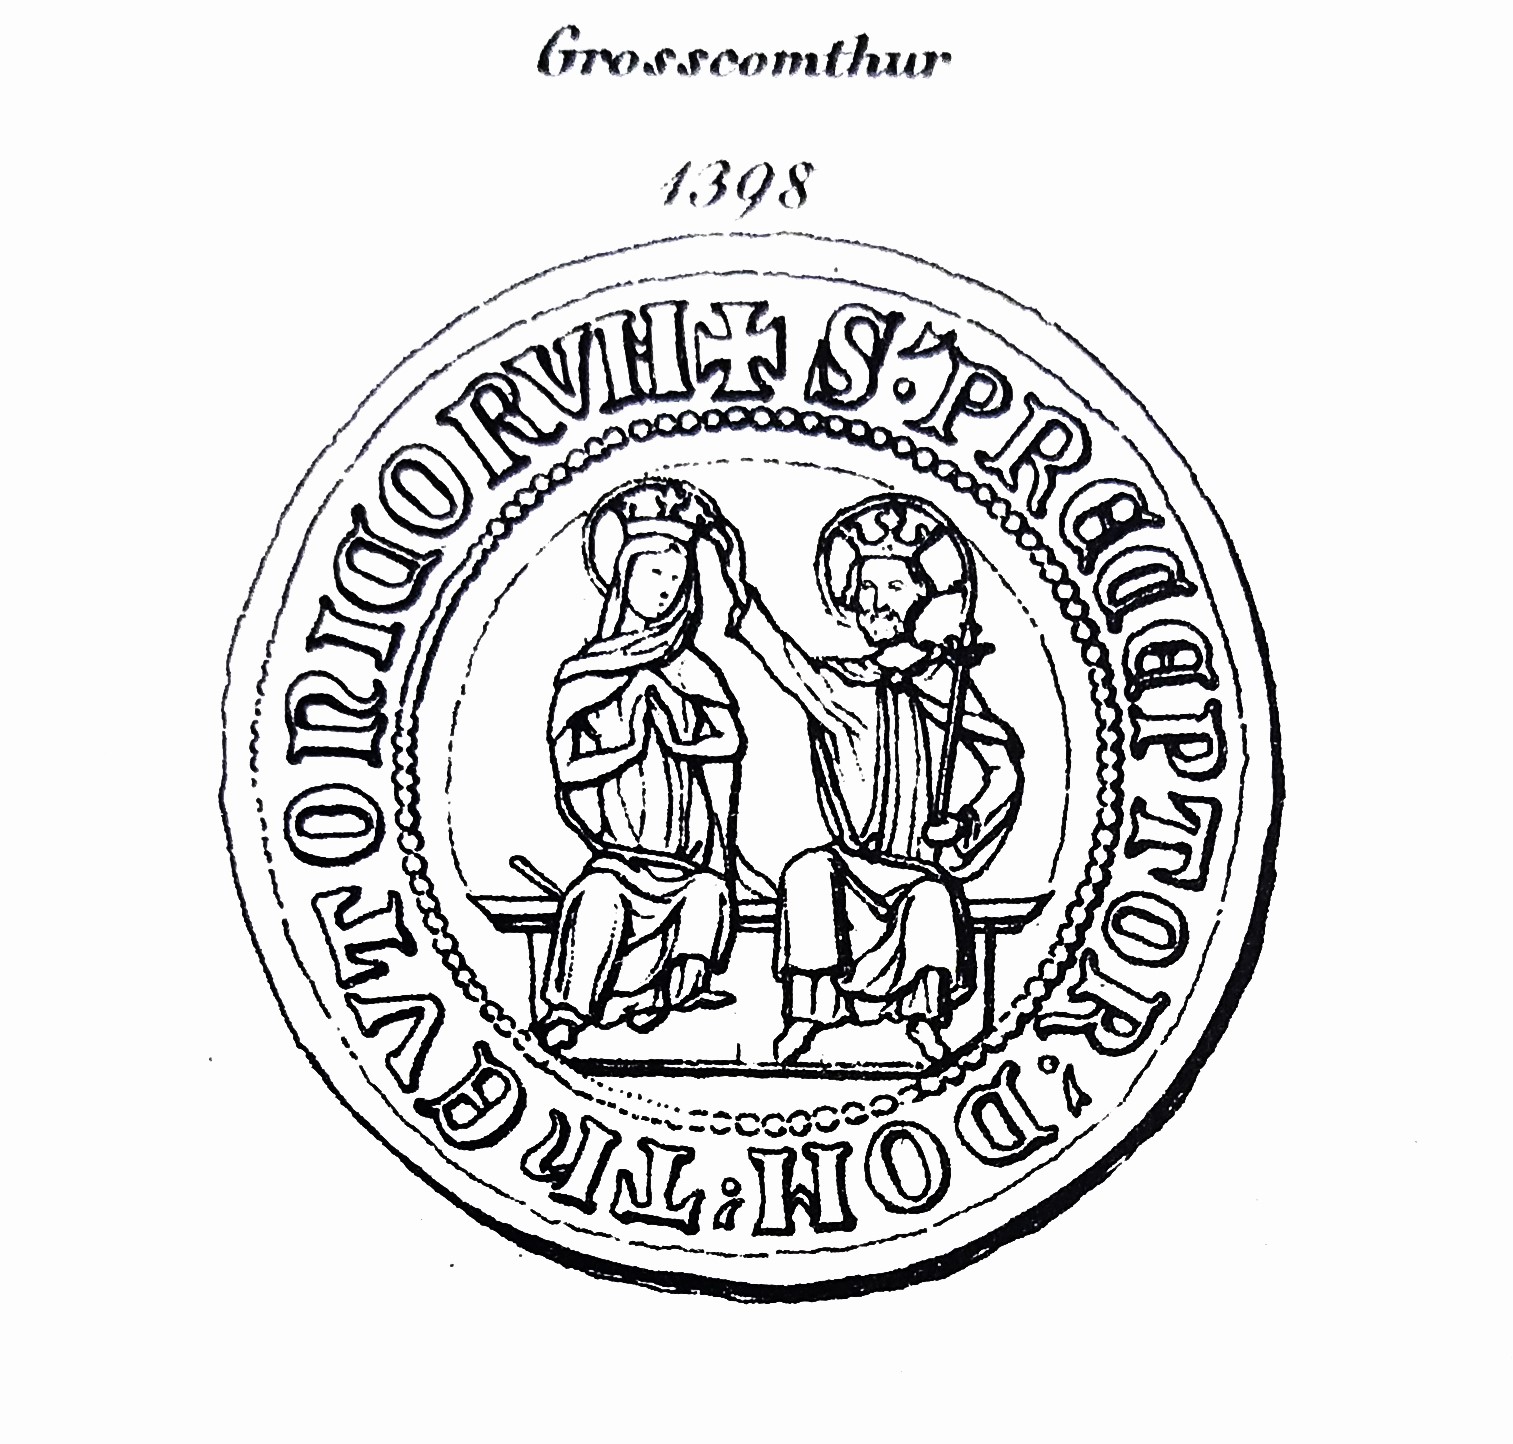 Das Bild zeigt eine schematische Darstellung des Siegels des Großkomturs.